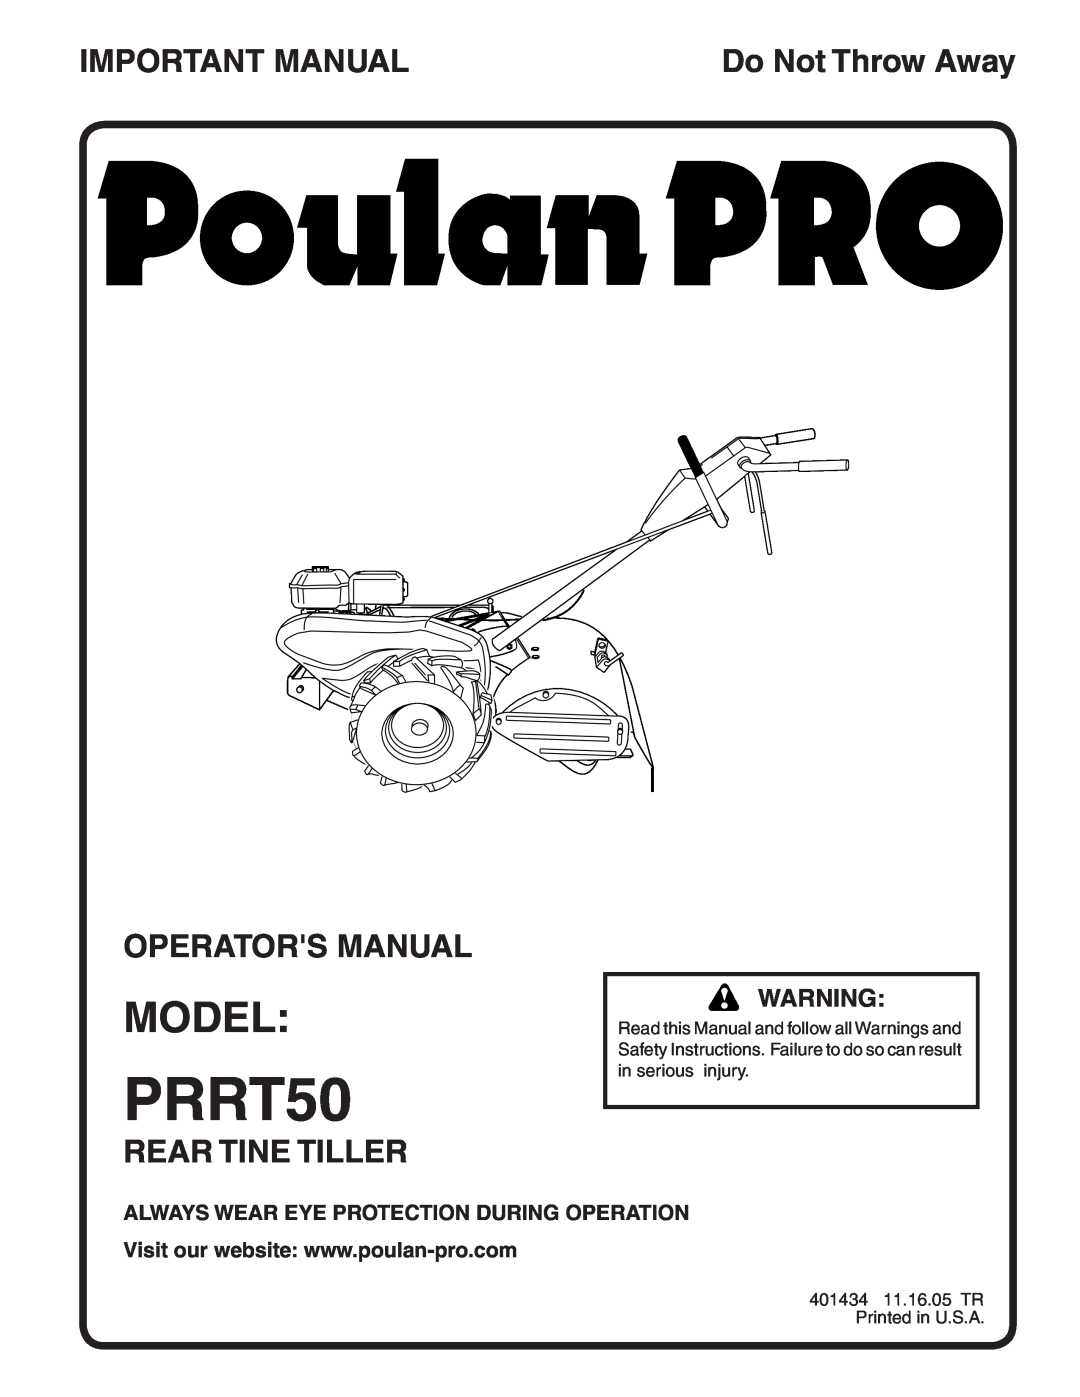 Poulan PRRT50 manual Model, Important Manual, Operators Manual, Rear Tine Tiller, Do Not Throw Away 